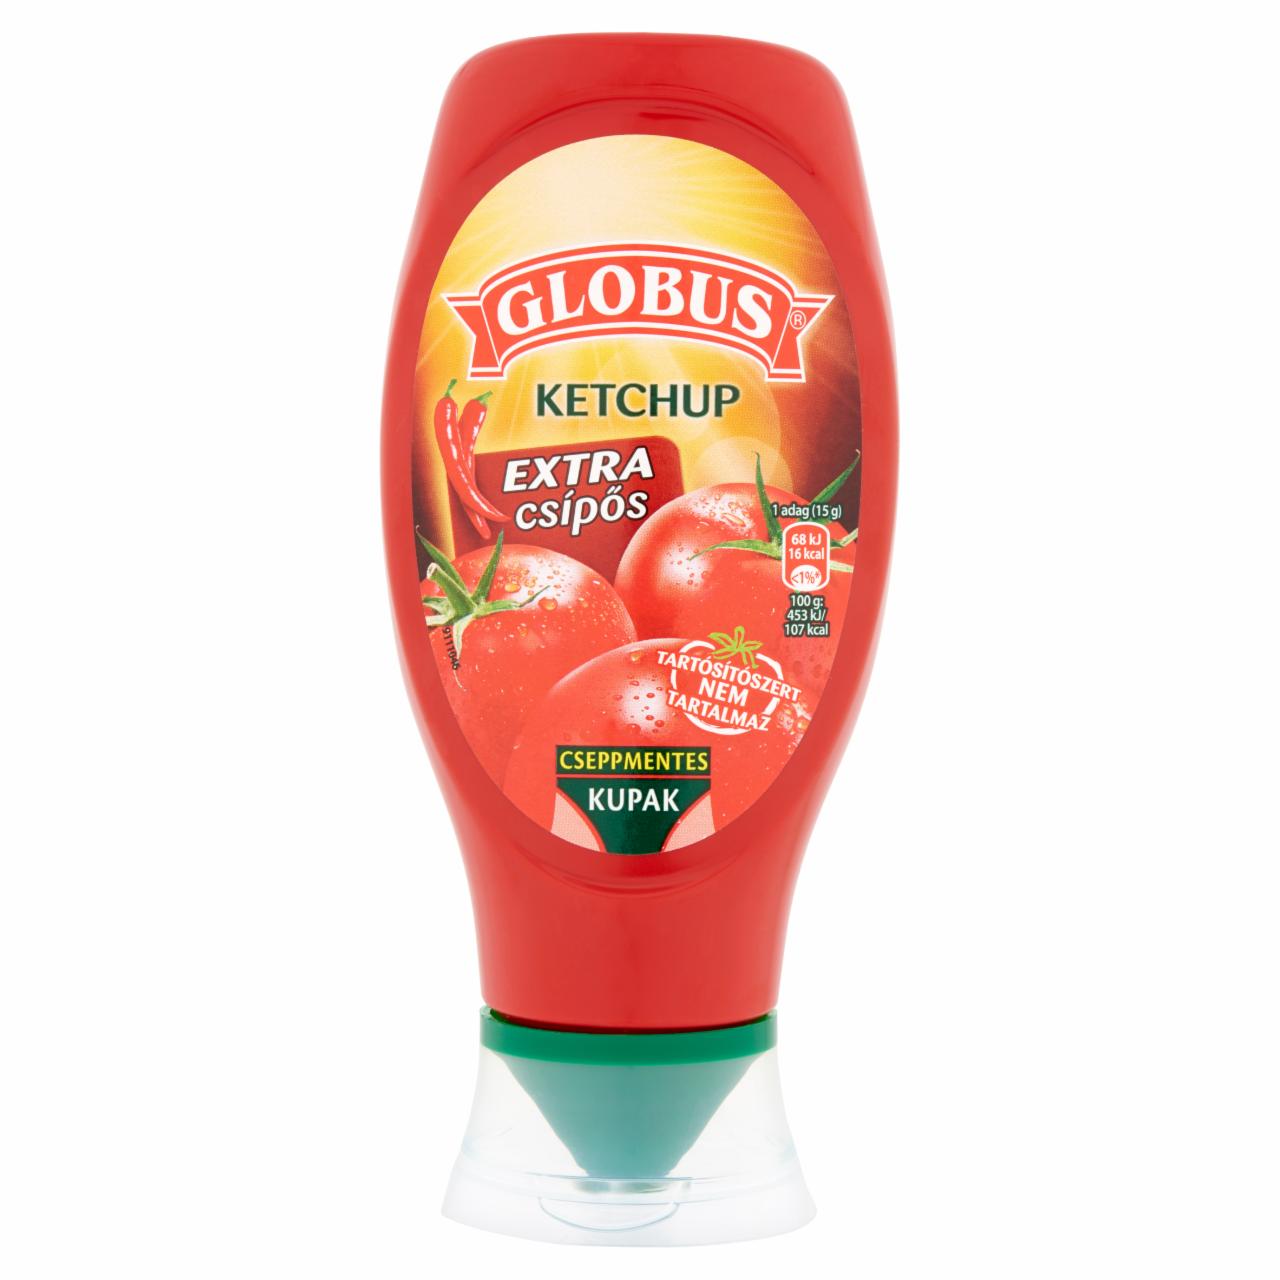 Képek - Globus extra csípős ketchup 450 g